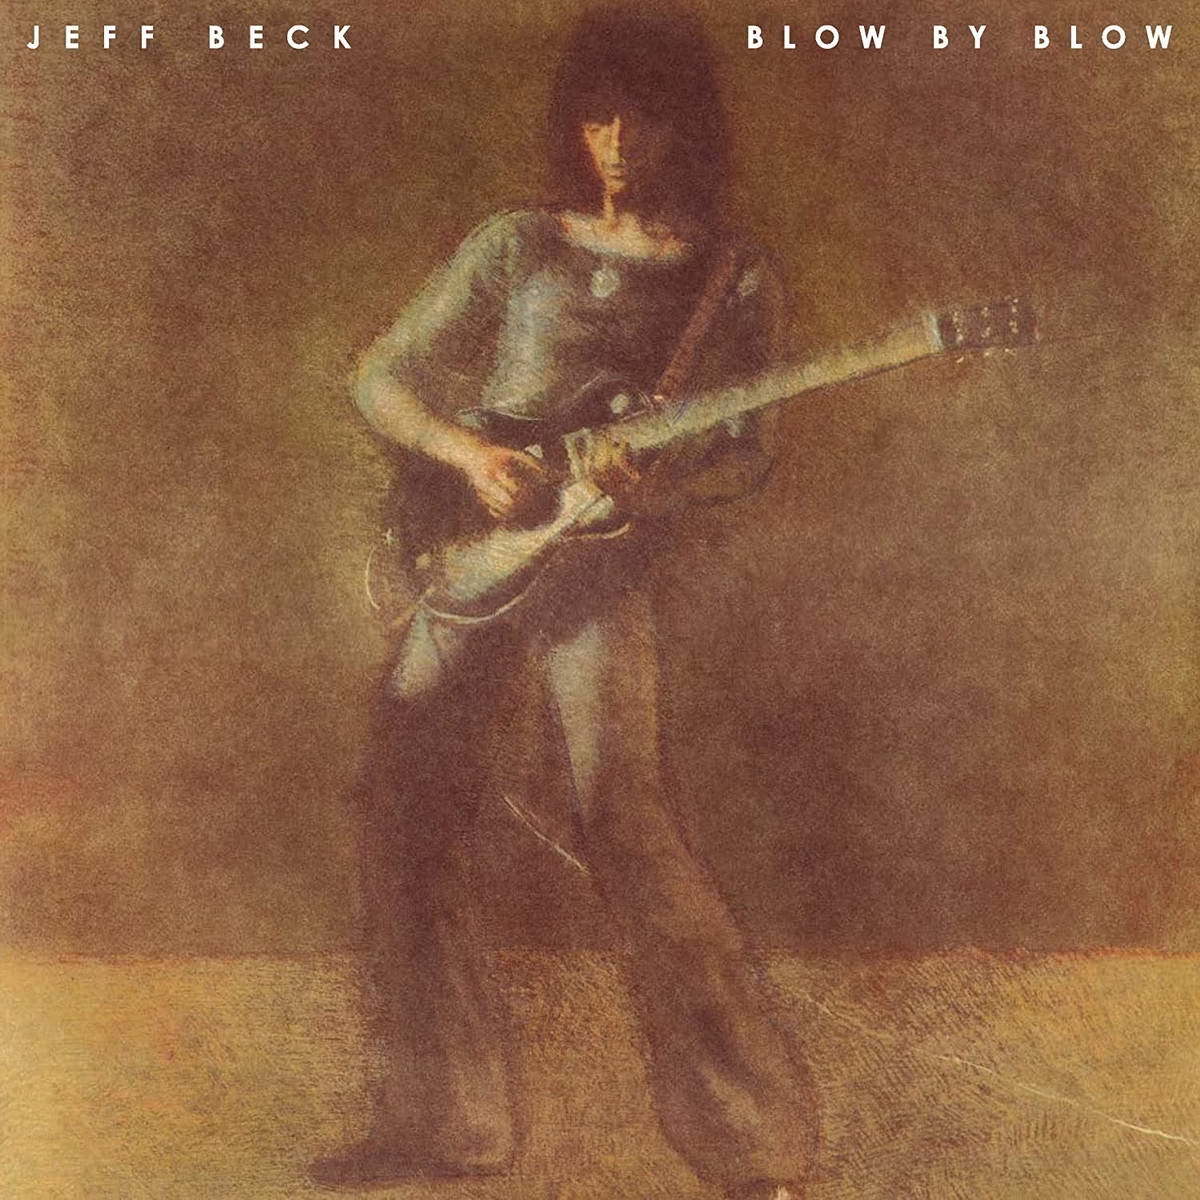 Виниловая пластинка Beck, Jeff, Blow By Blow (0886977455513) виниловая пластинка beck jeff blow by blow 0886977455513